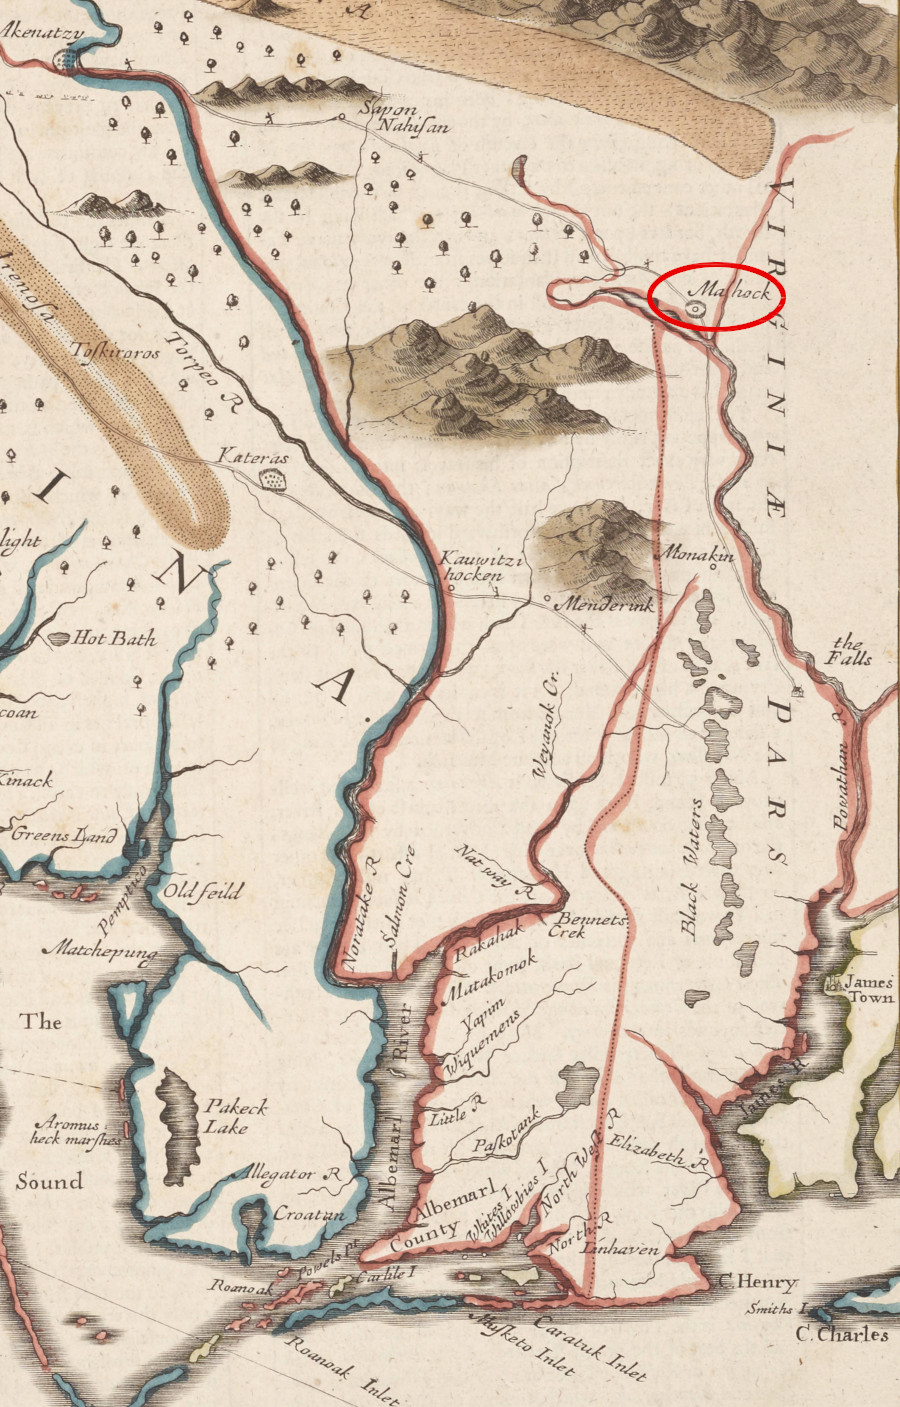 John Lederer documented Monacan living at Mahock (Rassawek) in 1670-71